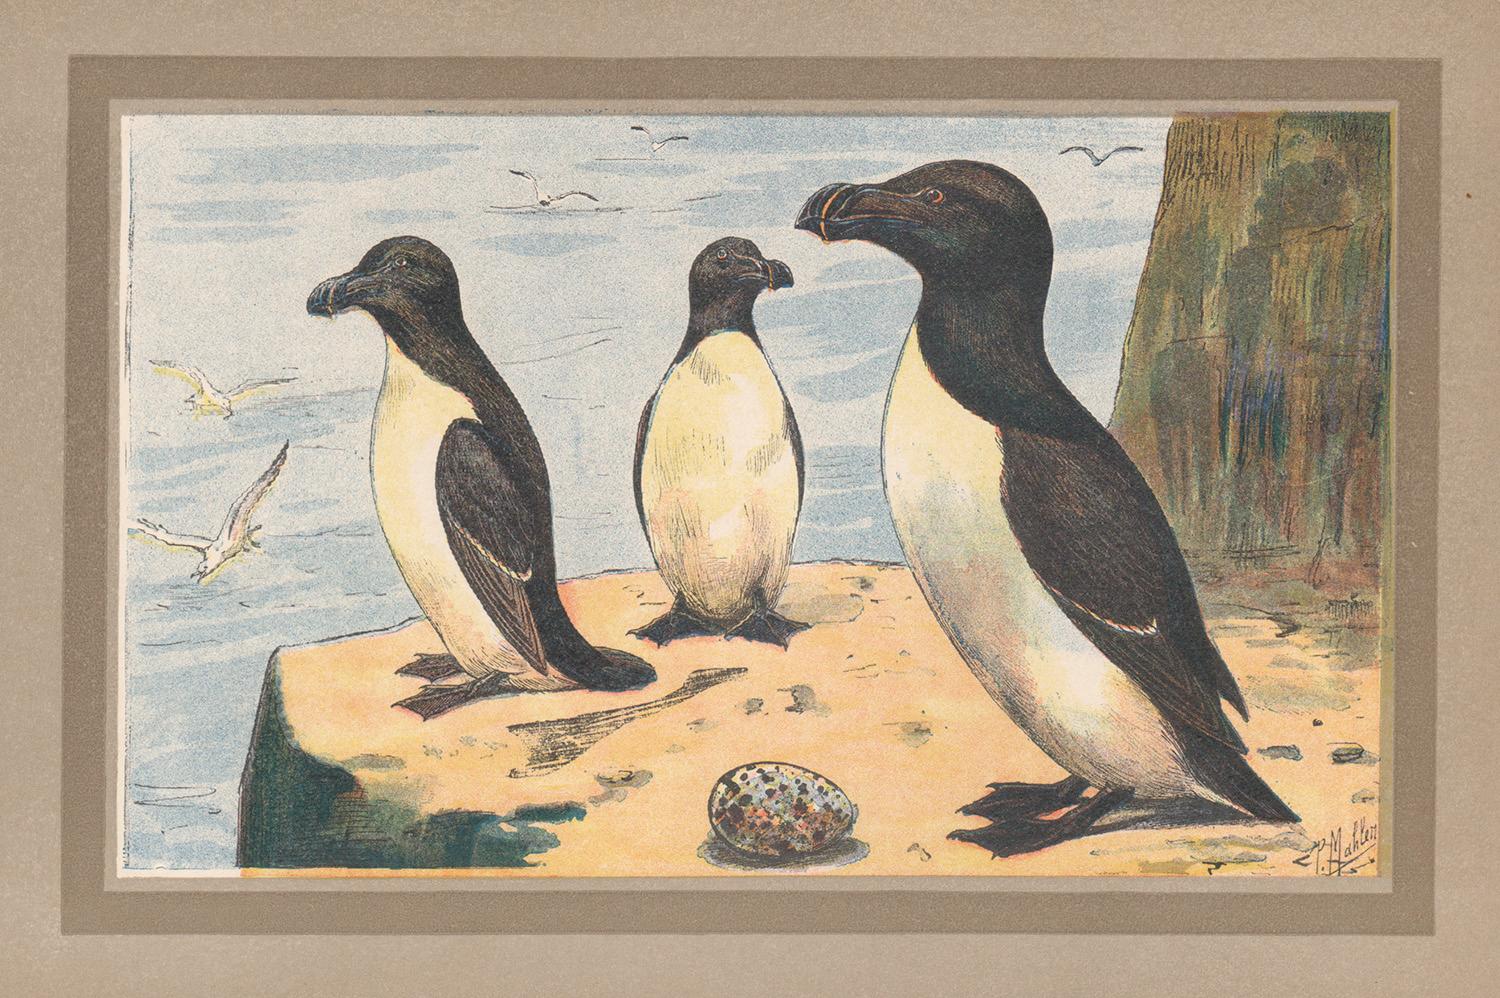 Razorbill Auk, Französische antike Naturgeschichte, Seevogel-Illustratorendruck